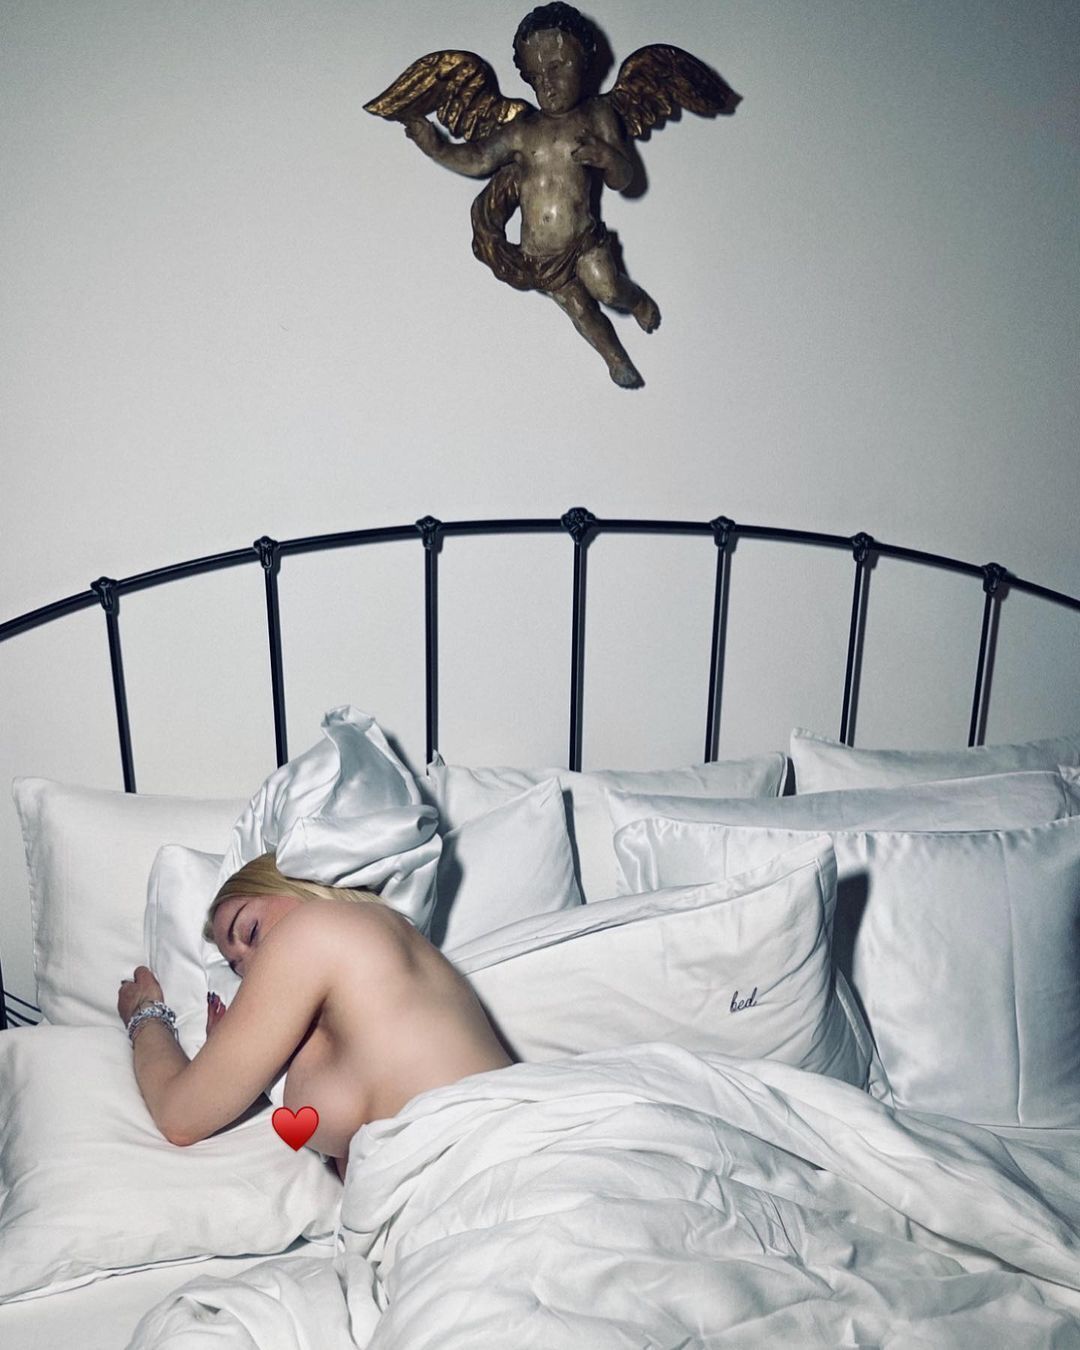 Обнаженная Мадонна в постели.